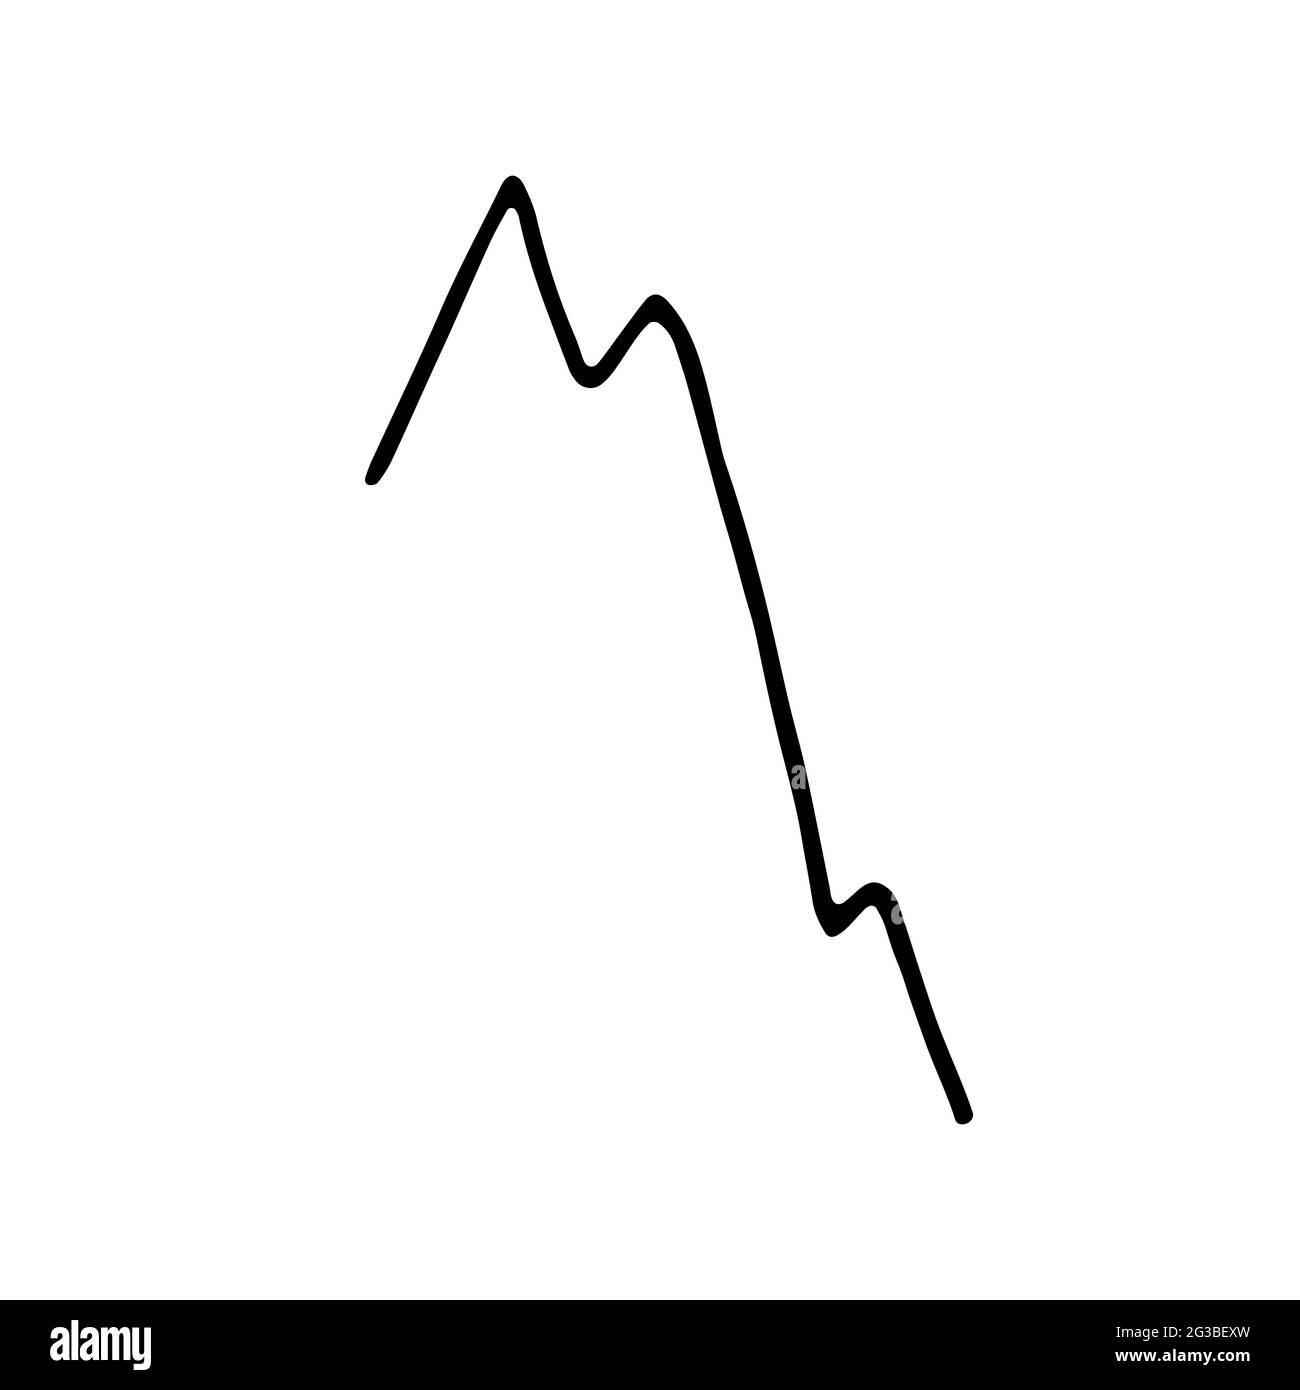 Ridurre i grafici isolati su sfondo bianco. Grafico del mercato del commercio finanziario di stock disegnato a mano. Icona della linea del grafico, finanza e operazioni bancarie, segno di diminuzione. Ve Illustrazione Vettoriale